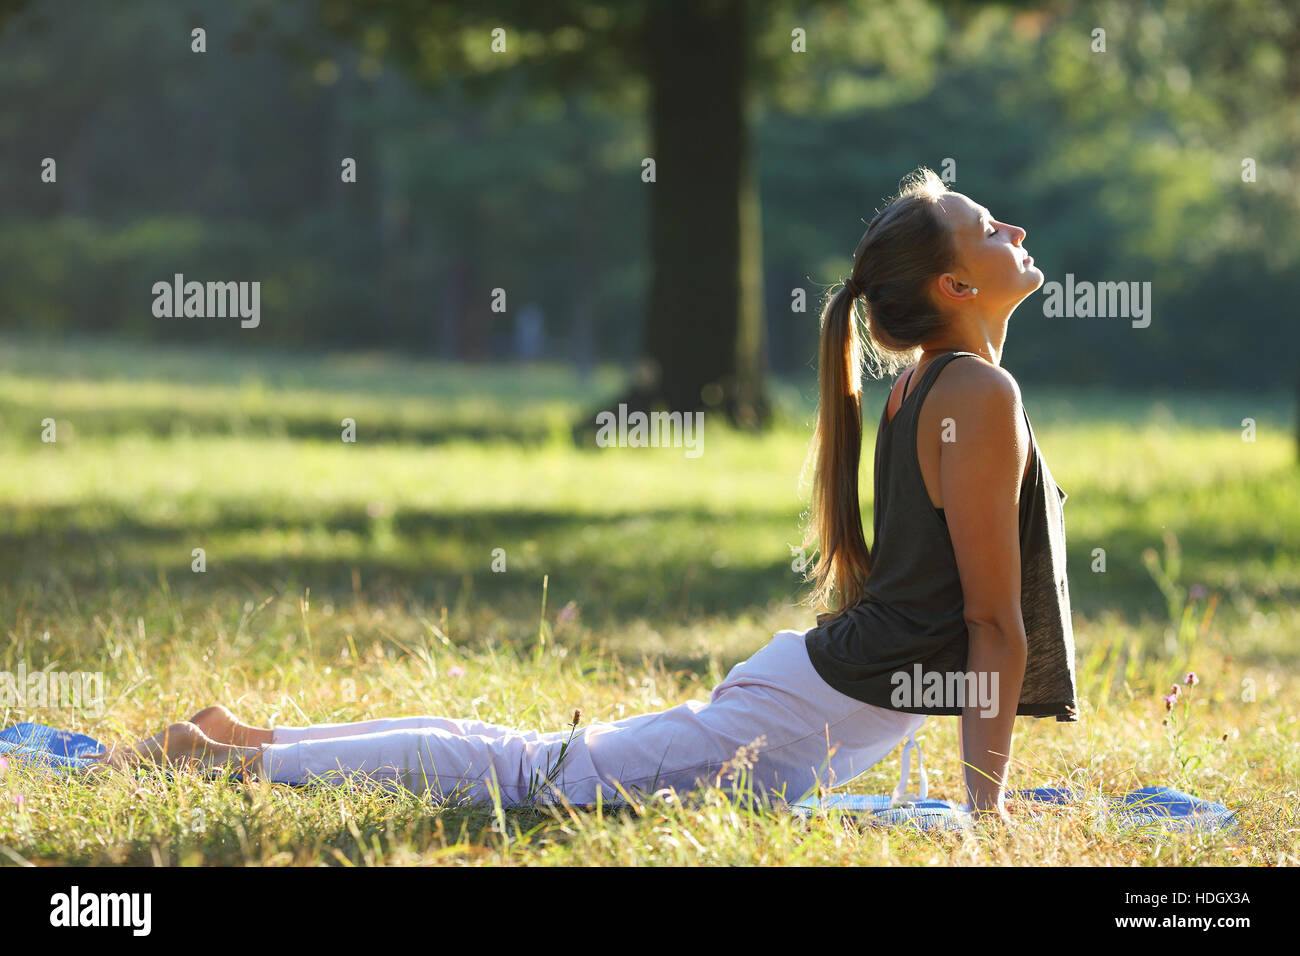 Yoga-Frau tun, Frühsport, gesunde Frau Stockfoto